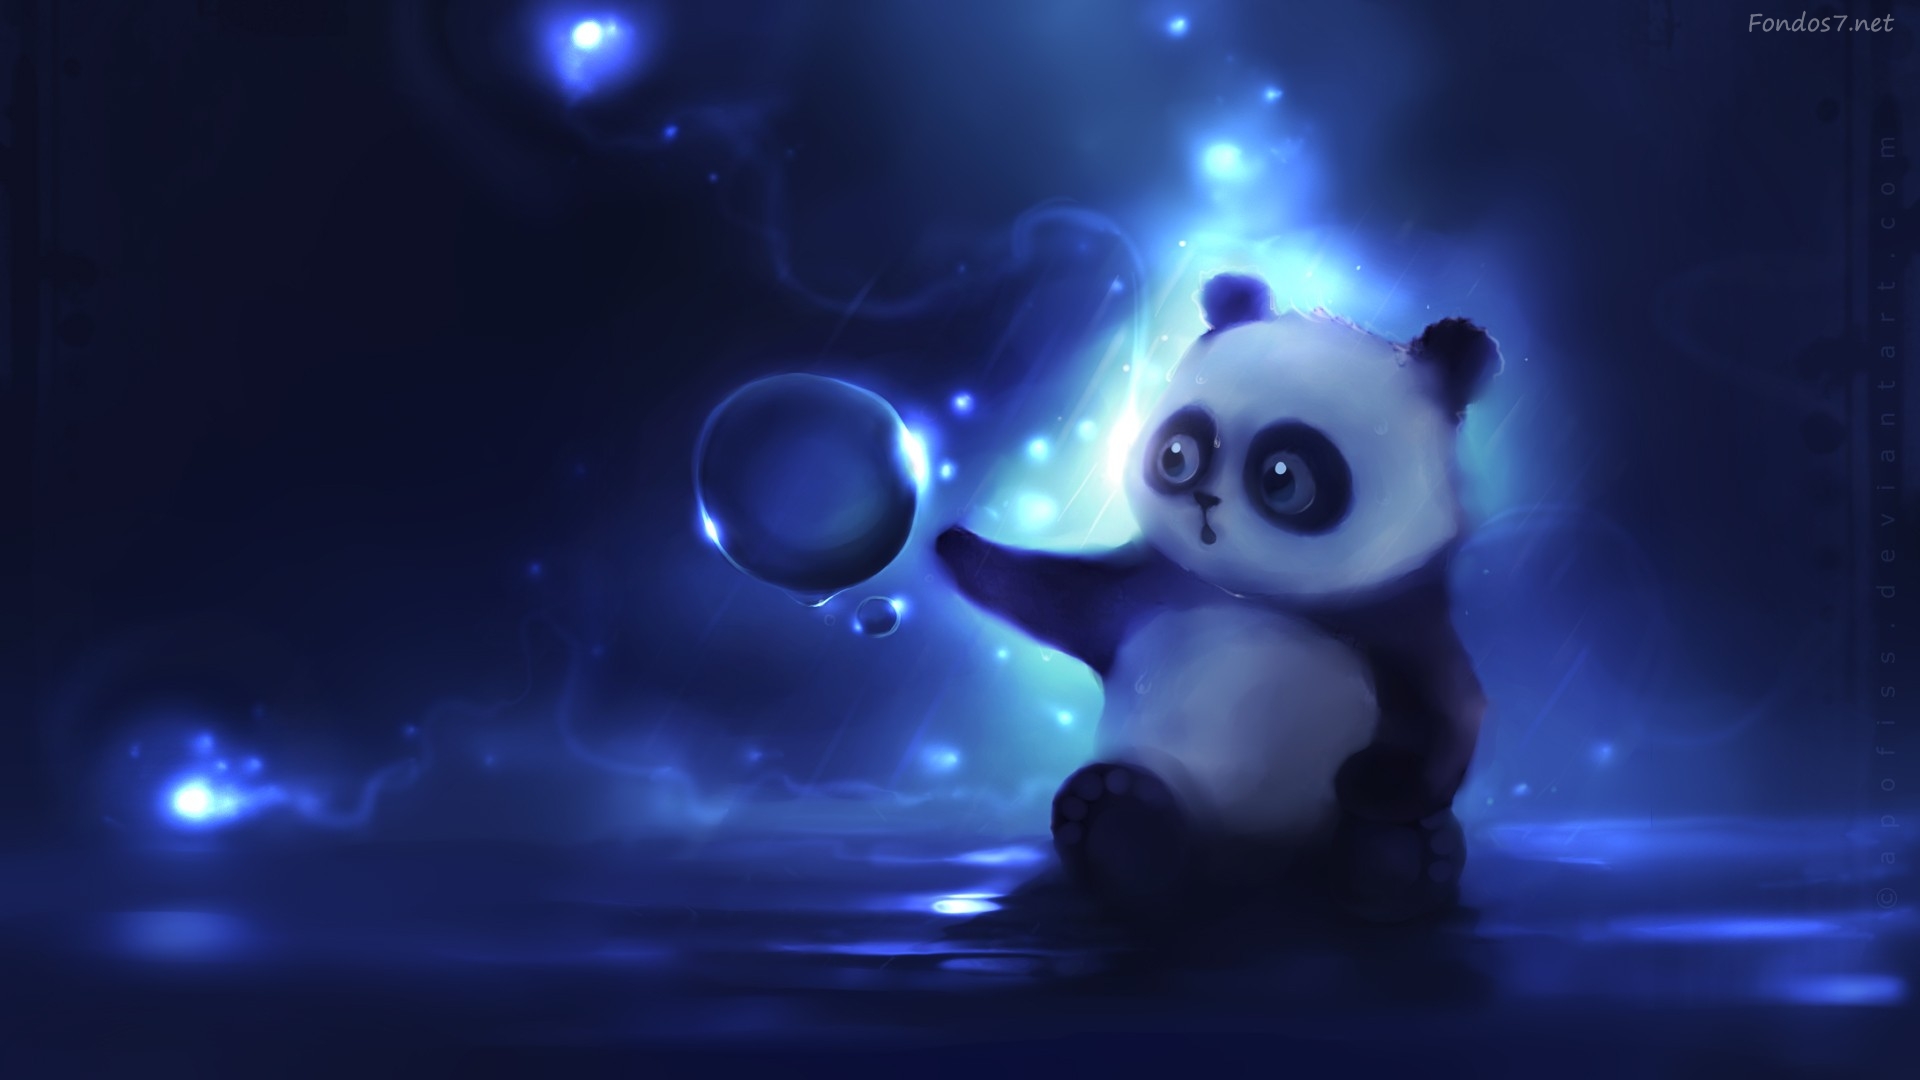 Descargar Fondos De Pantalla Panda Y Burbuja HD Widescreen Gratis